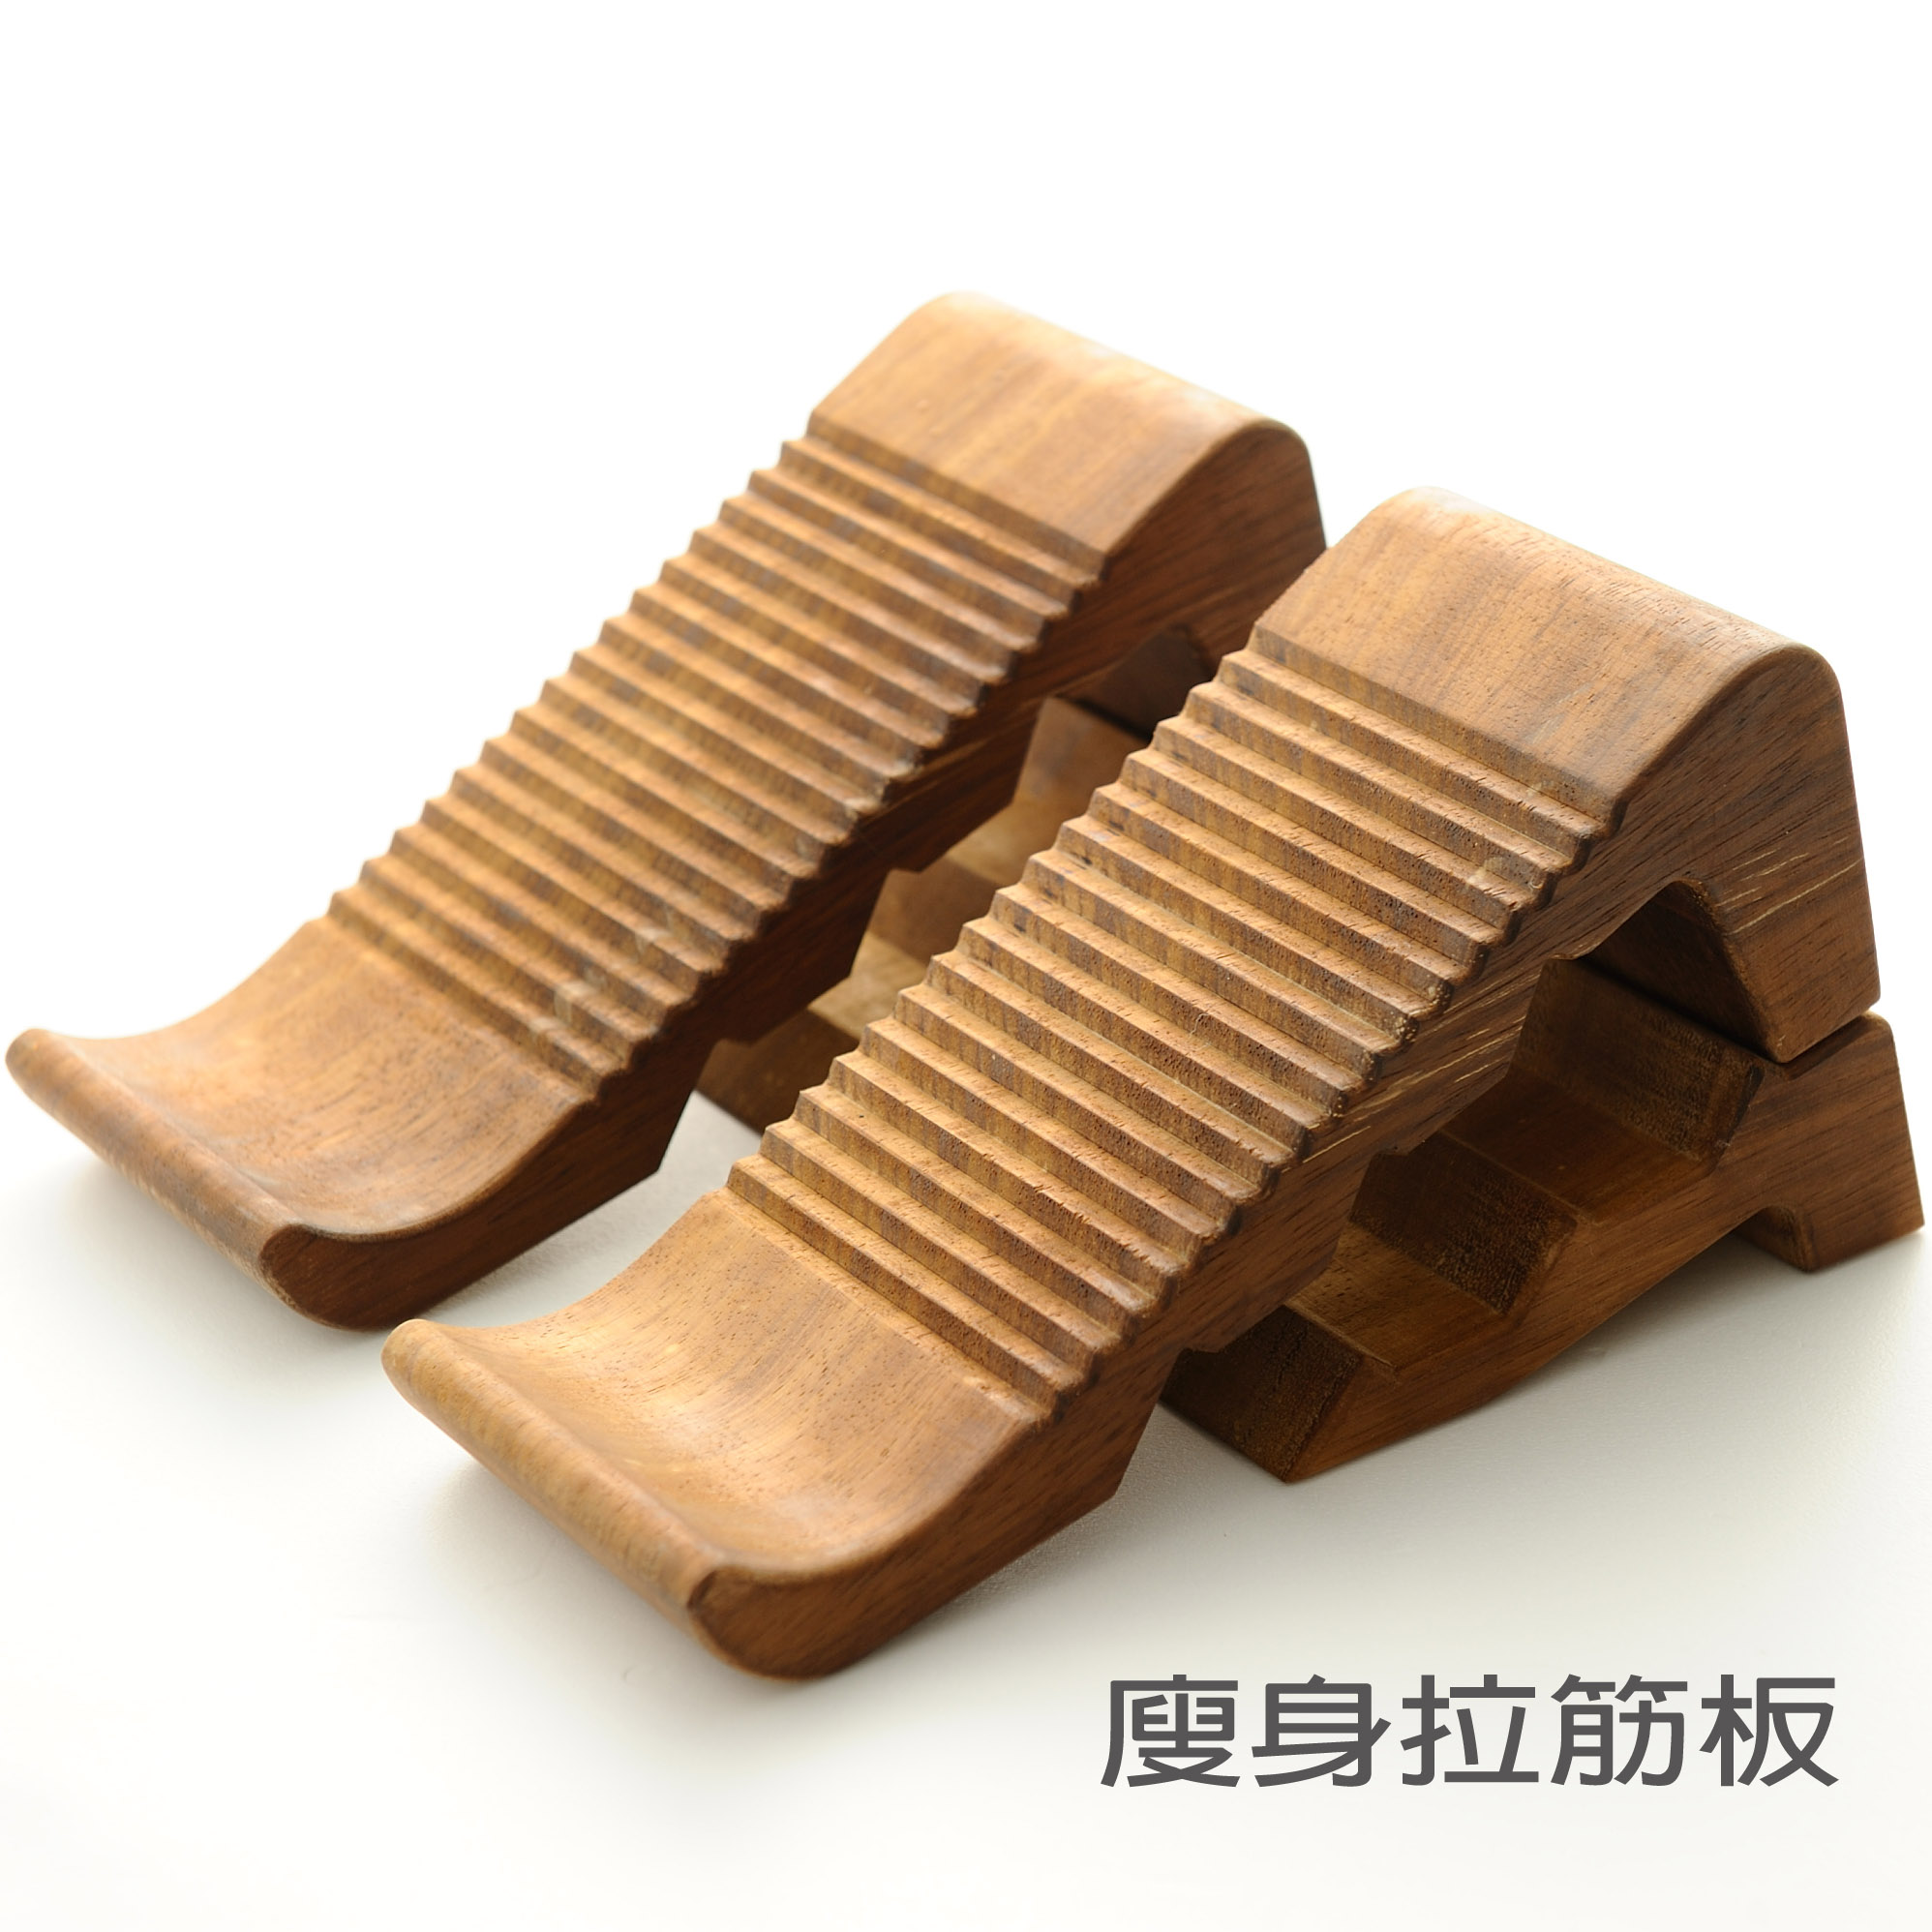 台湾节目推荐 手工打造实木拉筋板 美魔女保养工具 第2代进阶款